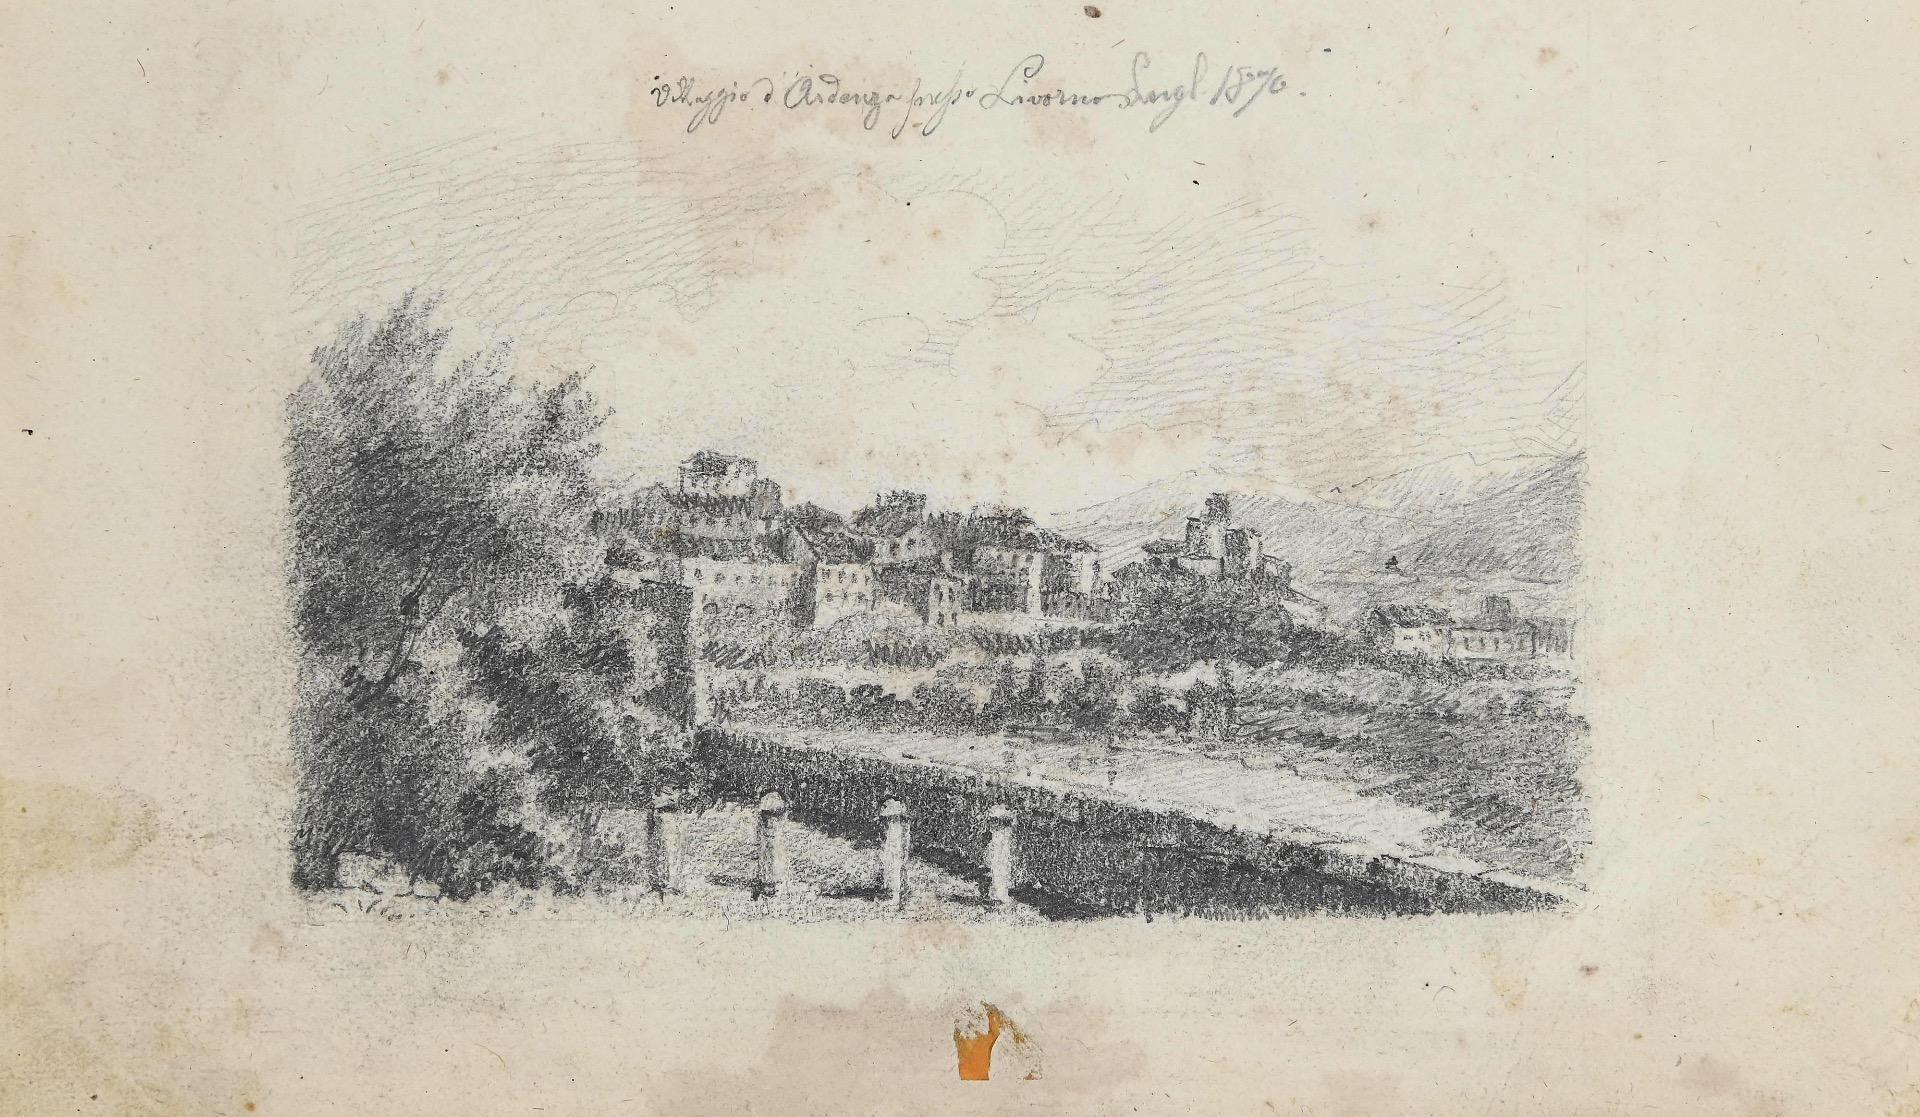 Unknown Landscape Art – Cityscape of Ardenza, Livorno - Original Bleistiftzeichnung - 1870